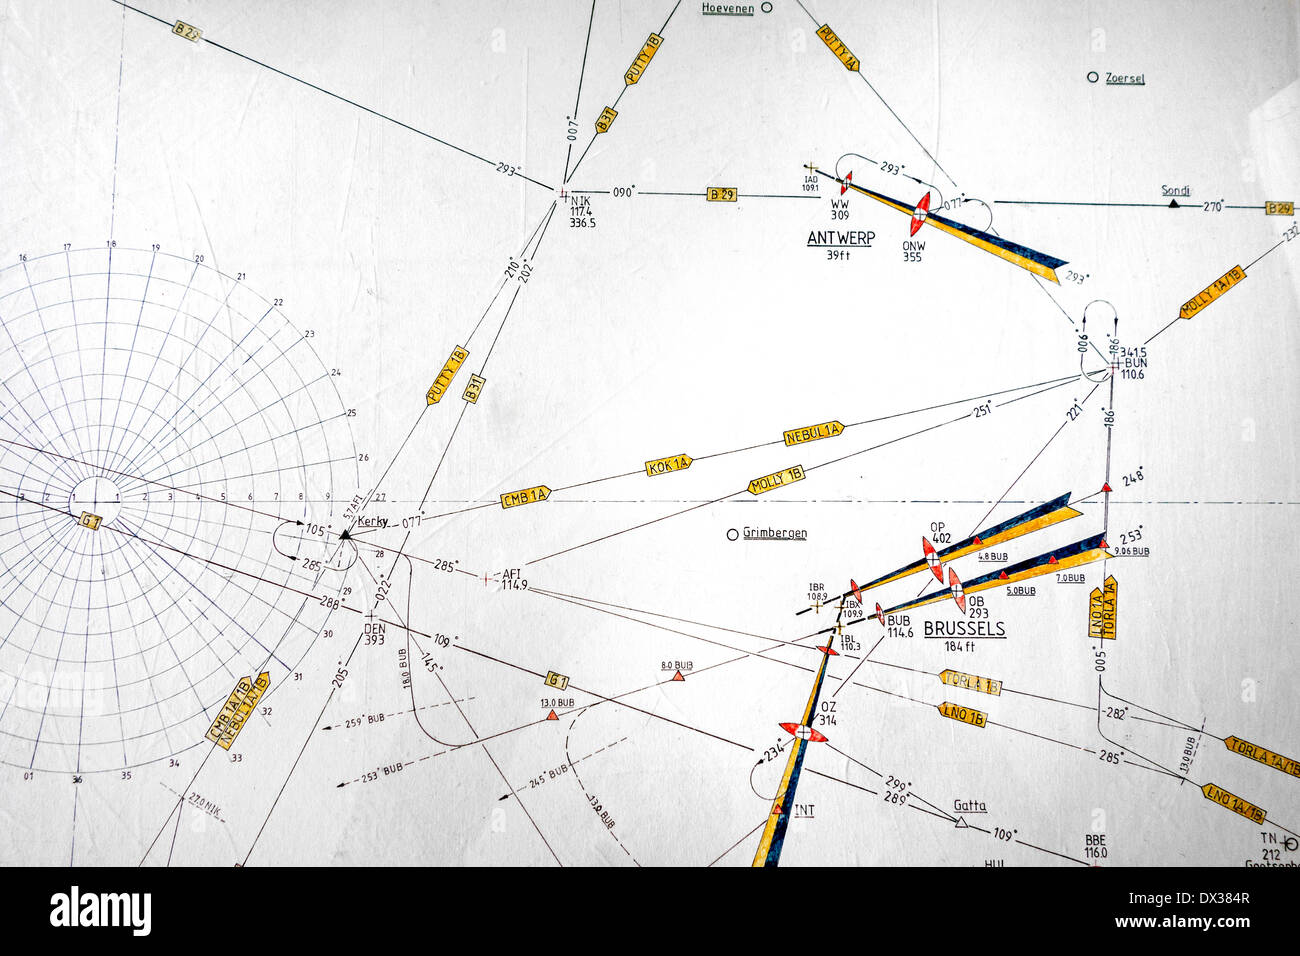 Carte aéronautique, carte montrant des symboles de waypoints et routes de vol conçu pour aider à la navigation des aéronefs Banque D'Images